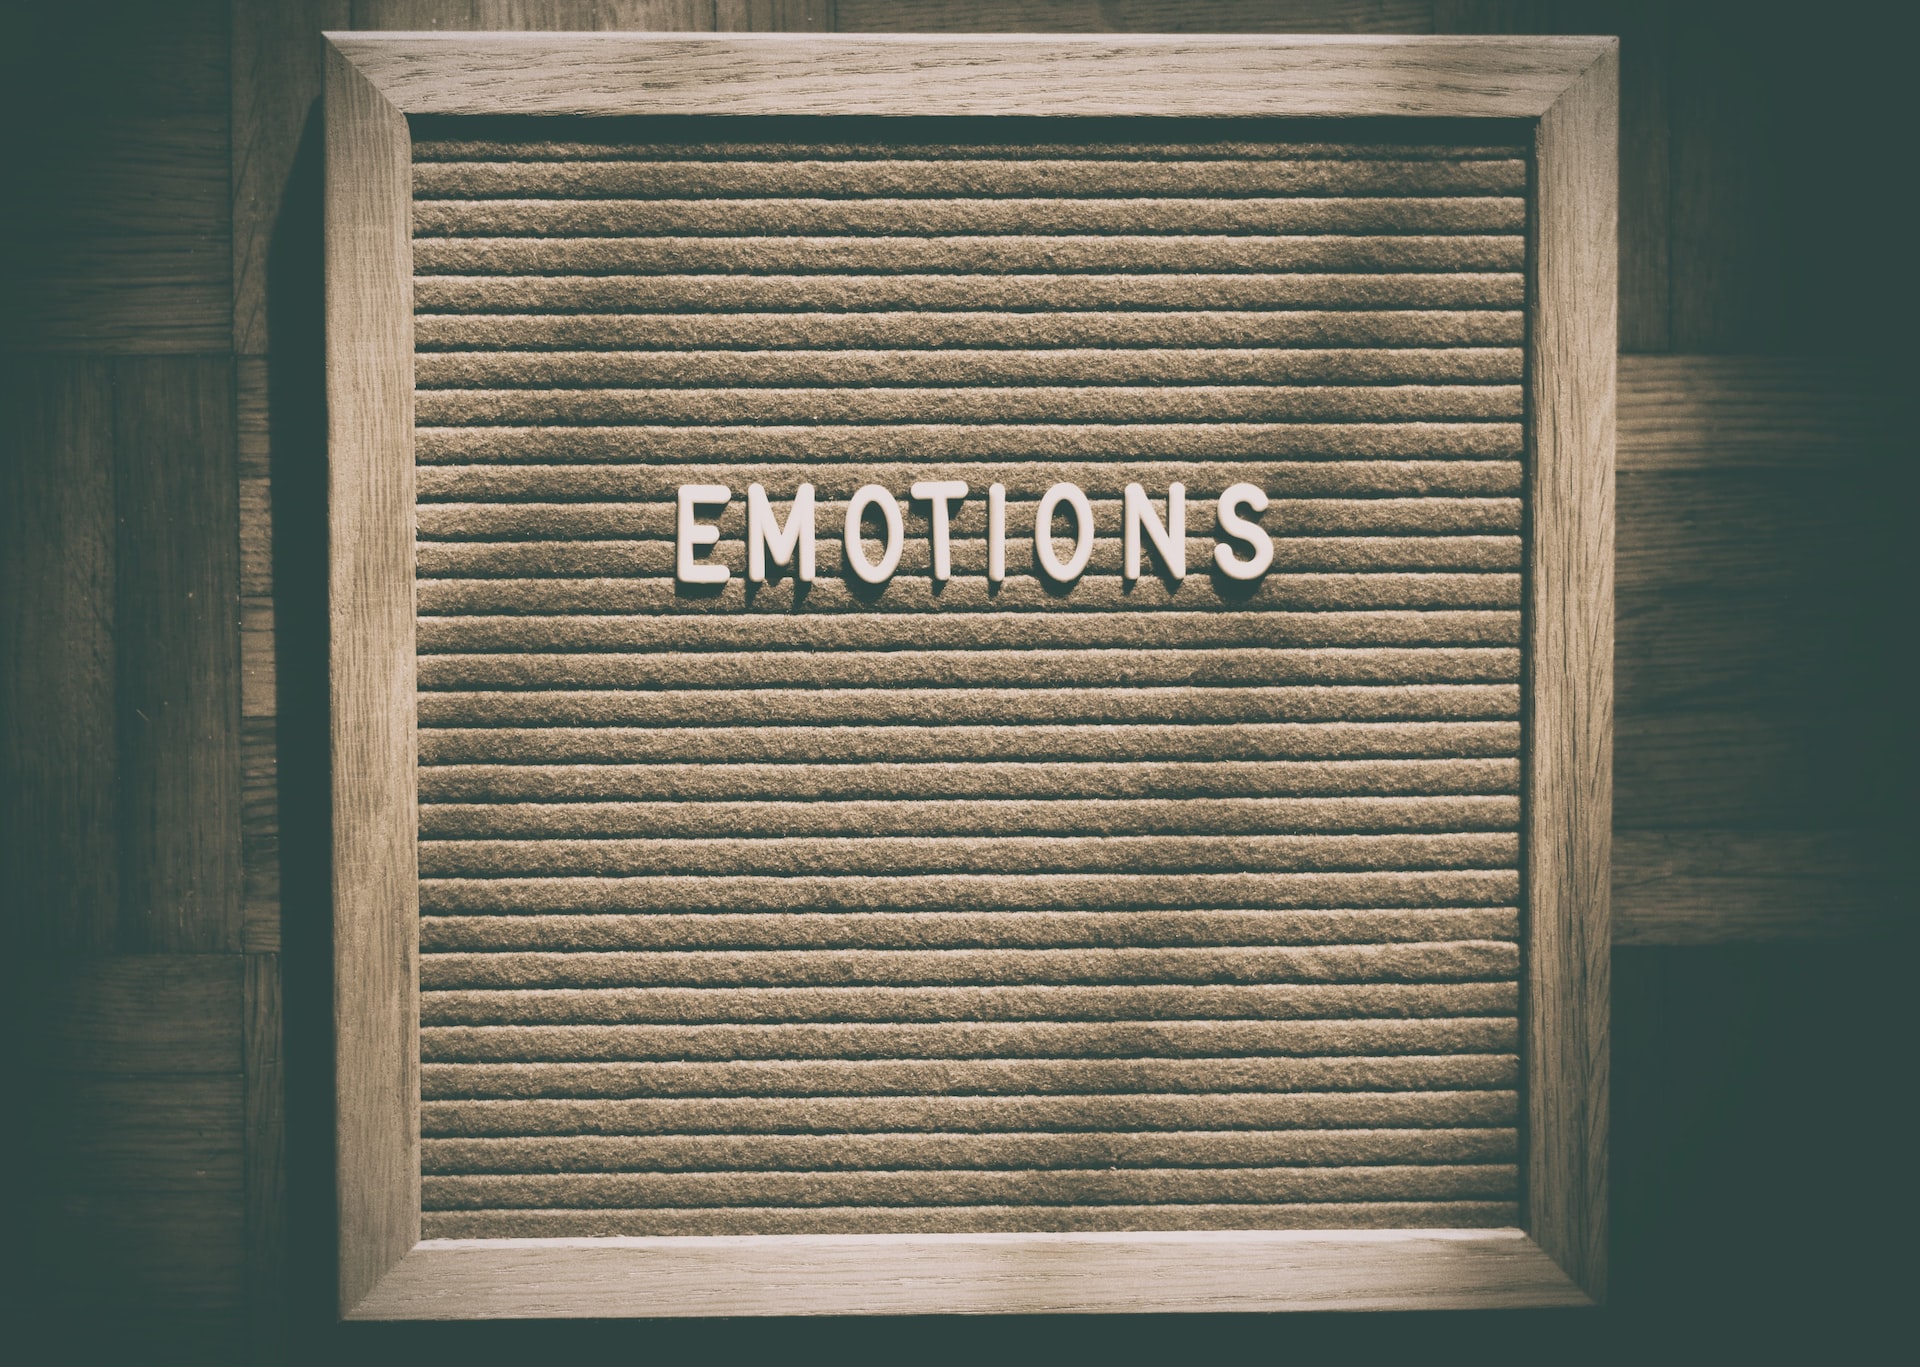 Miért fontos az érzelmi intelligencia az MI által uralt mai világban?